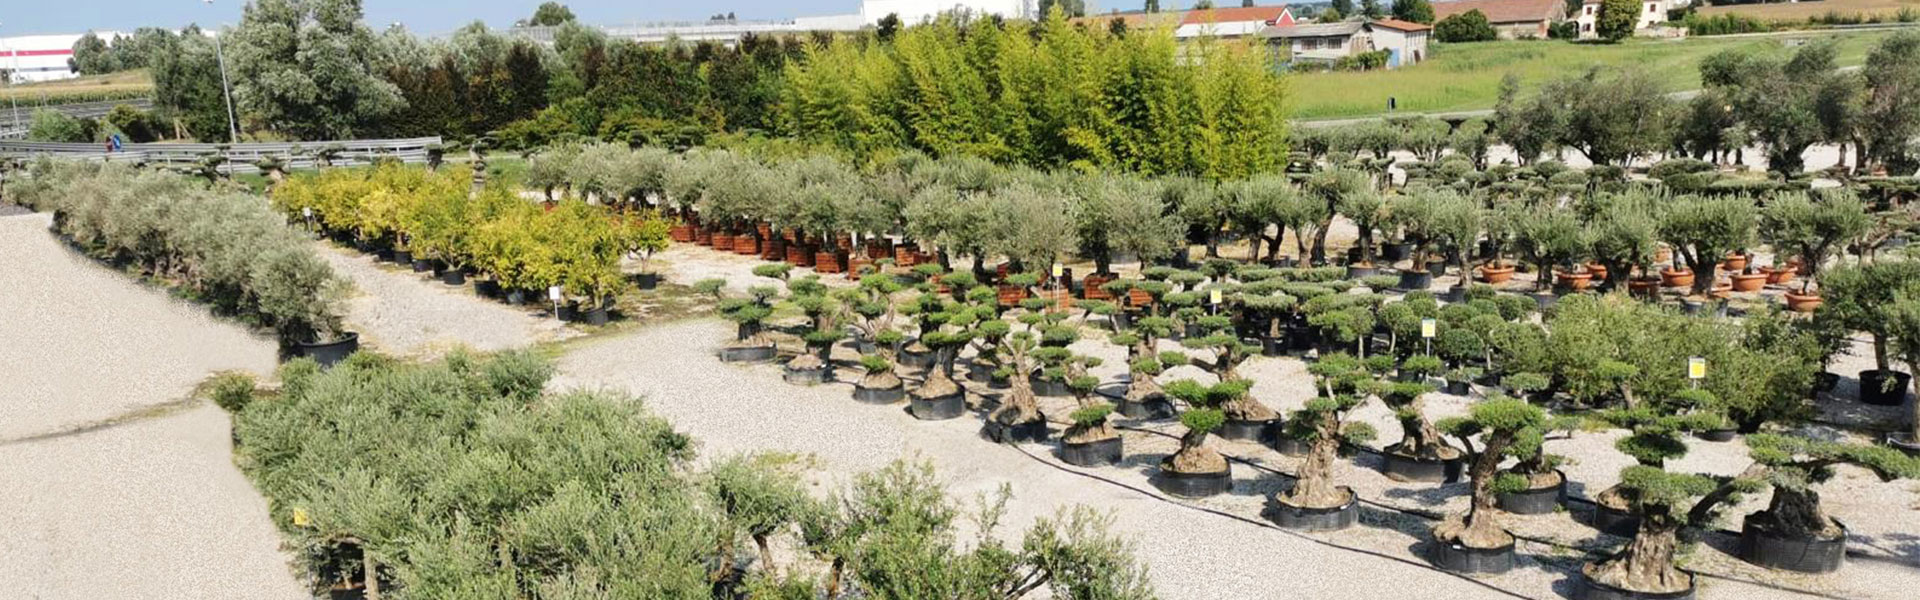 Vivaio Real Garden - vendita olivi